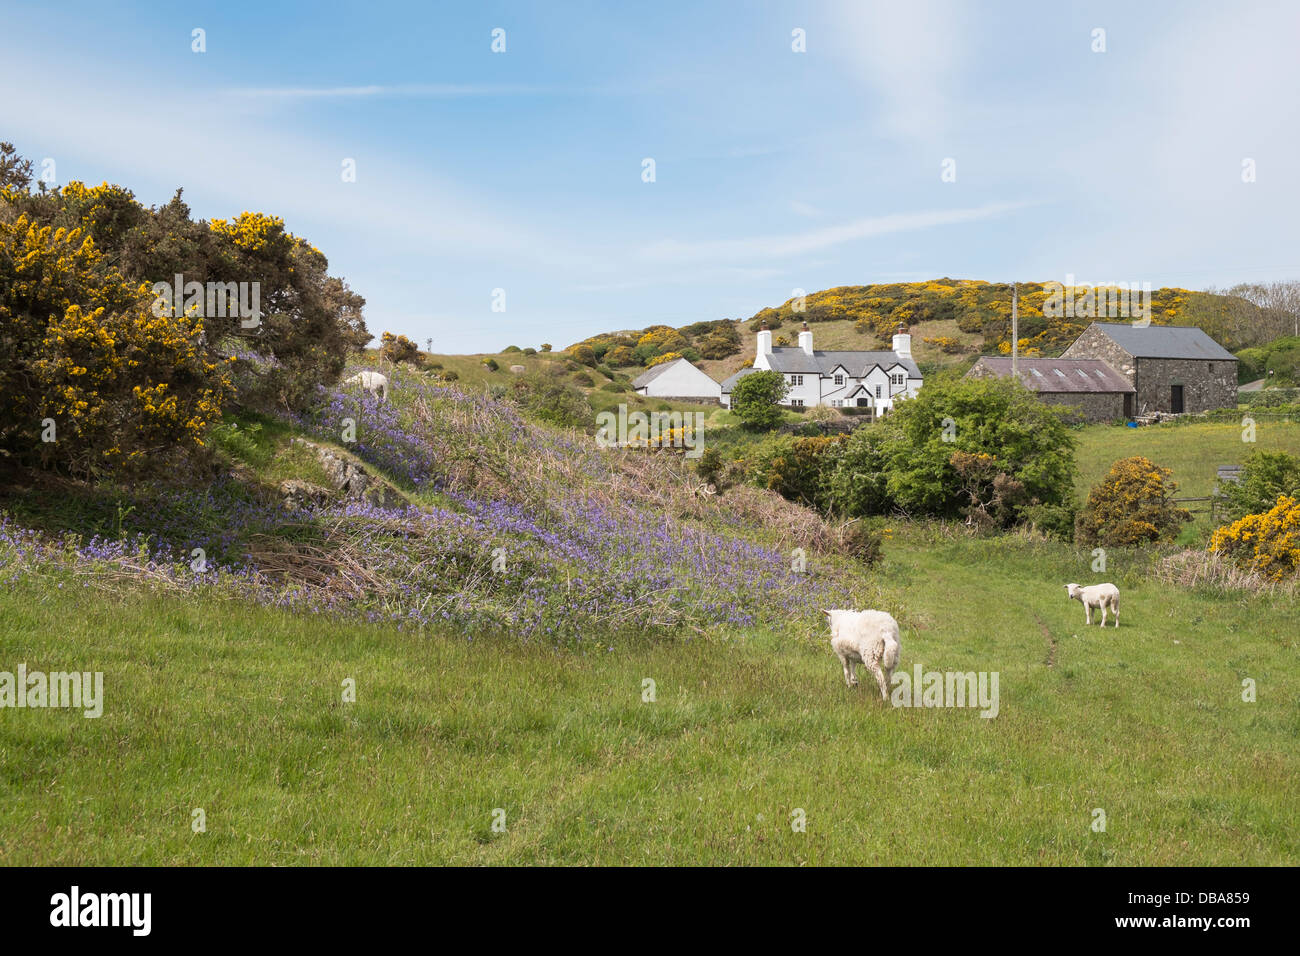 Scène de pays au printemps avec bluebells agneaux et moutons dans une ferme près de Cemaes, Isle of Anglesey, au nord du Pays de Galles, Royaume-Uni, Angleterre Banque D'Images